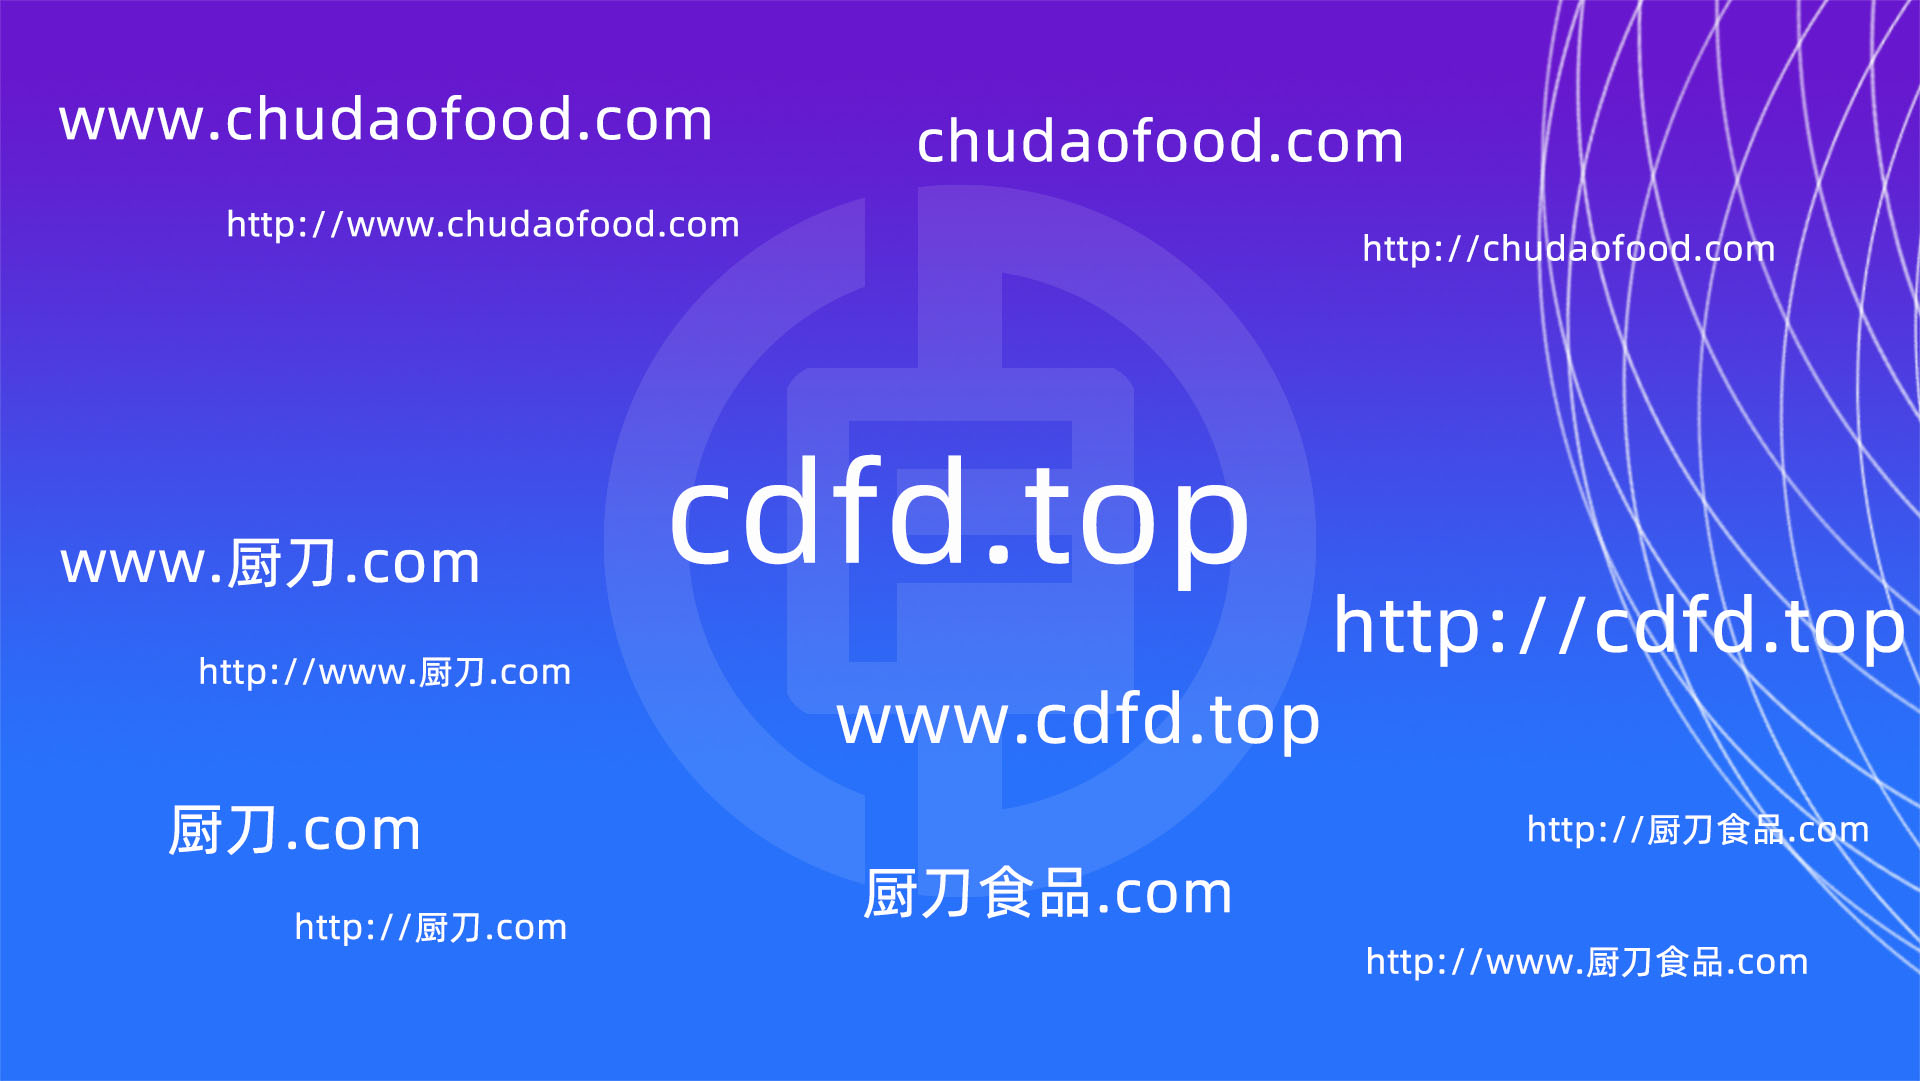 厨刀食品·启用新域名 CDFD.TOP